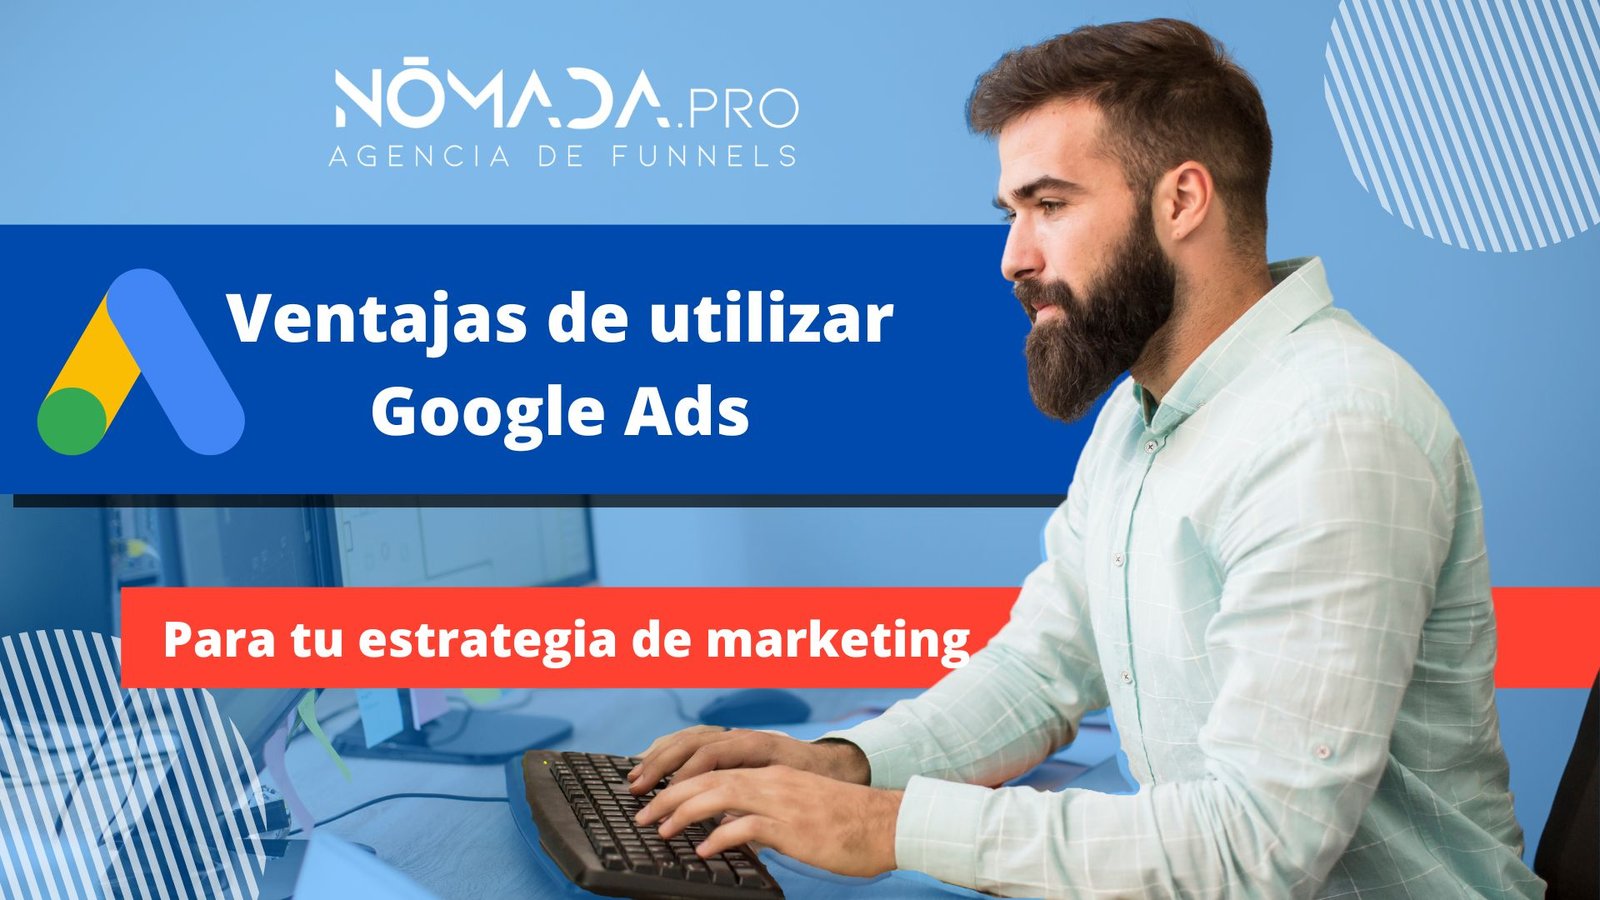 Ventajas de utilizar Google ads para tu estrategia de marketing